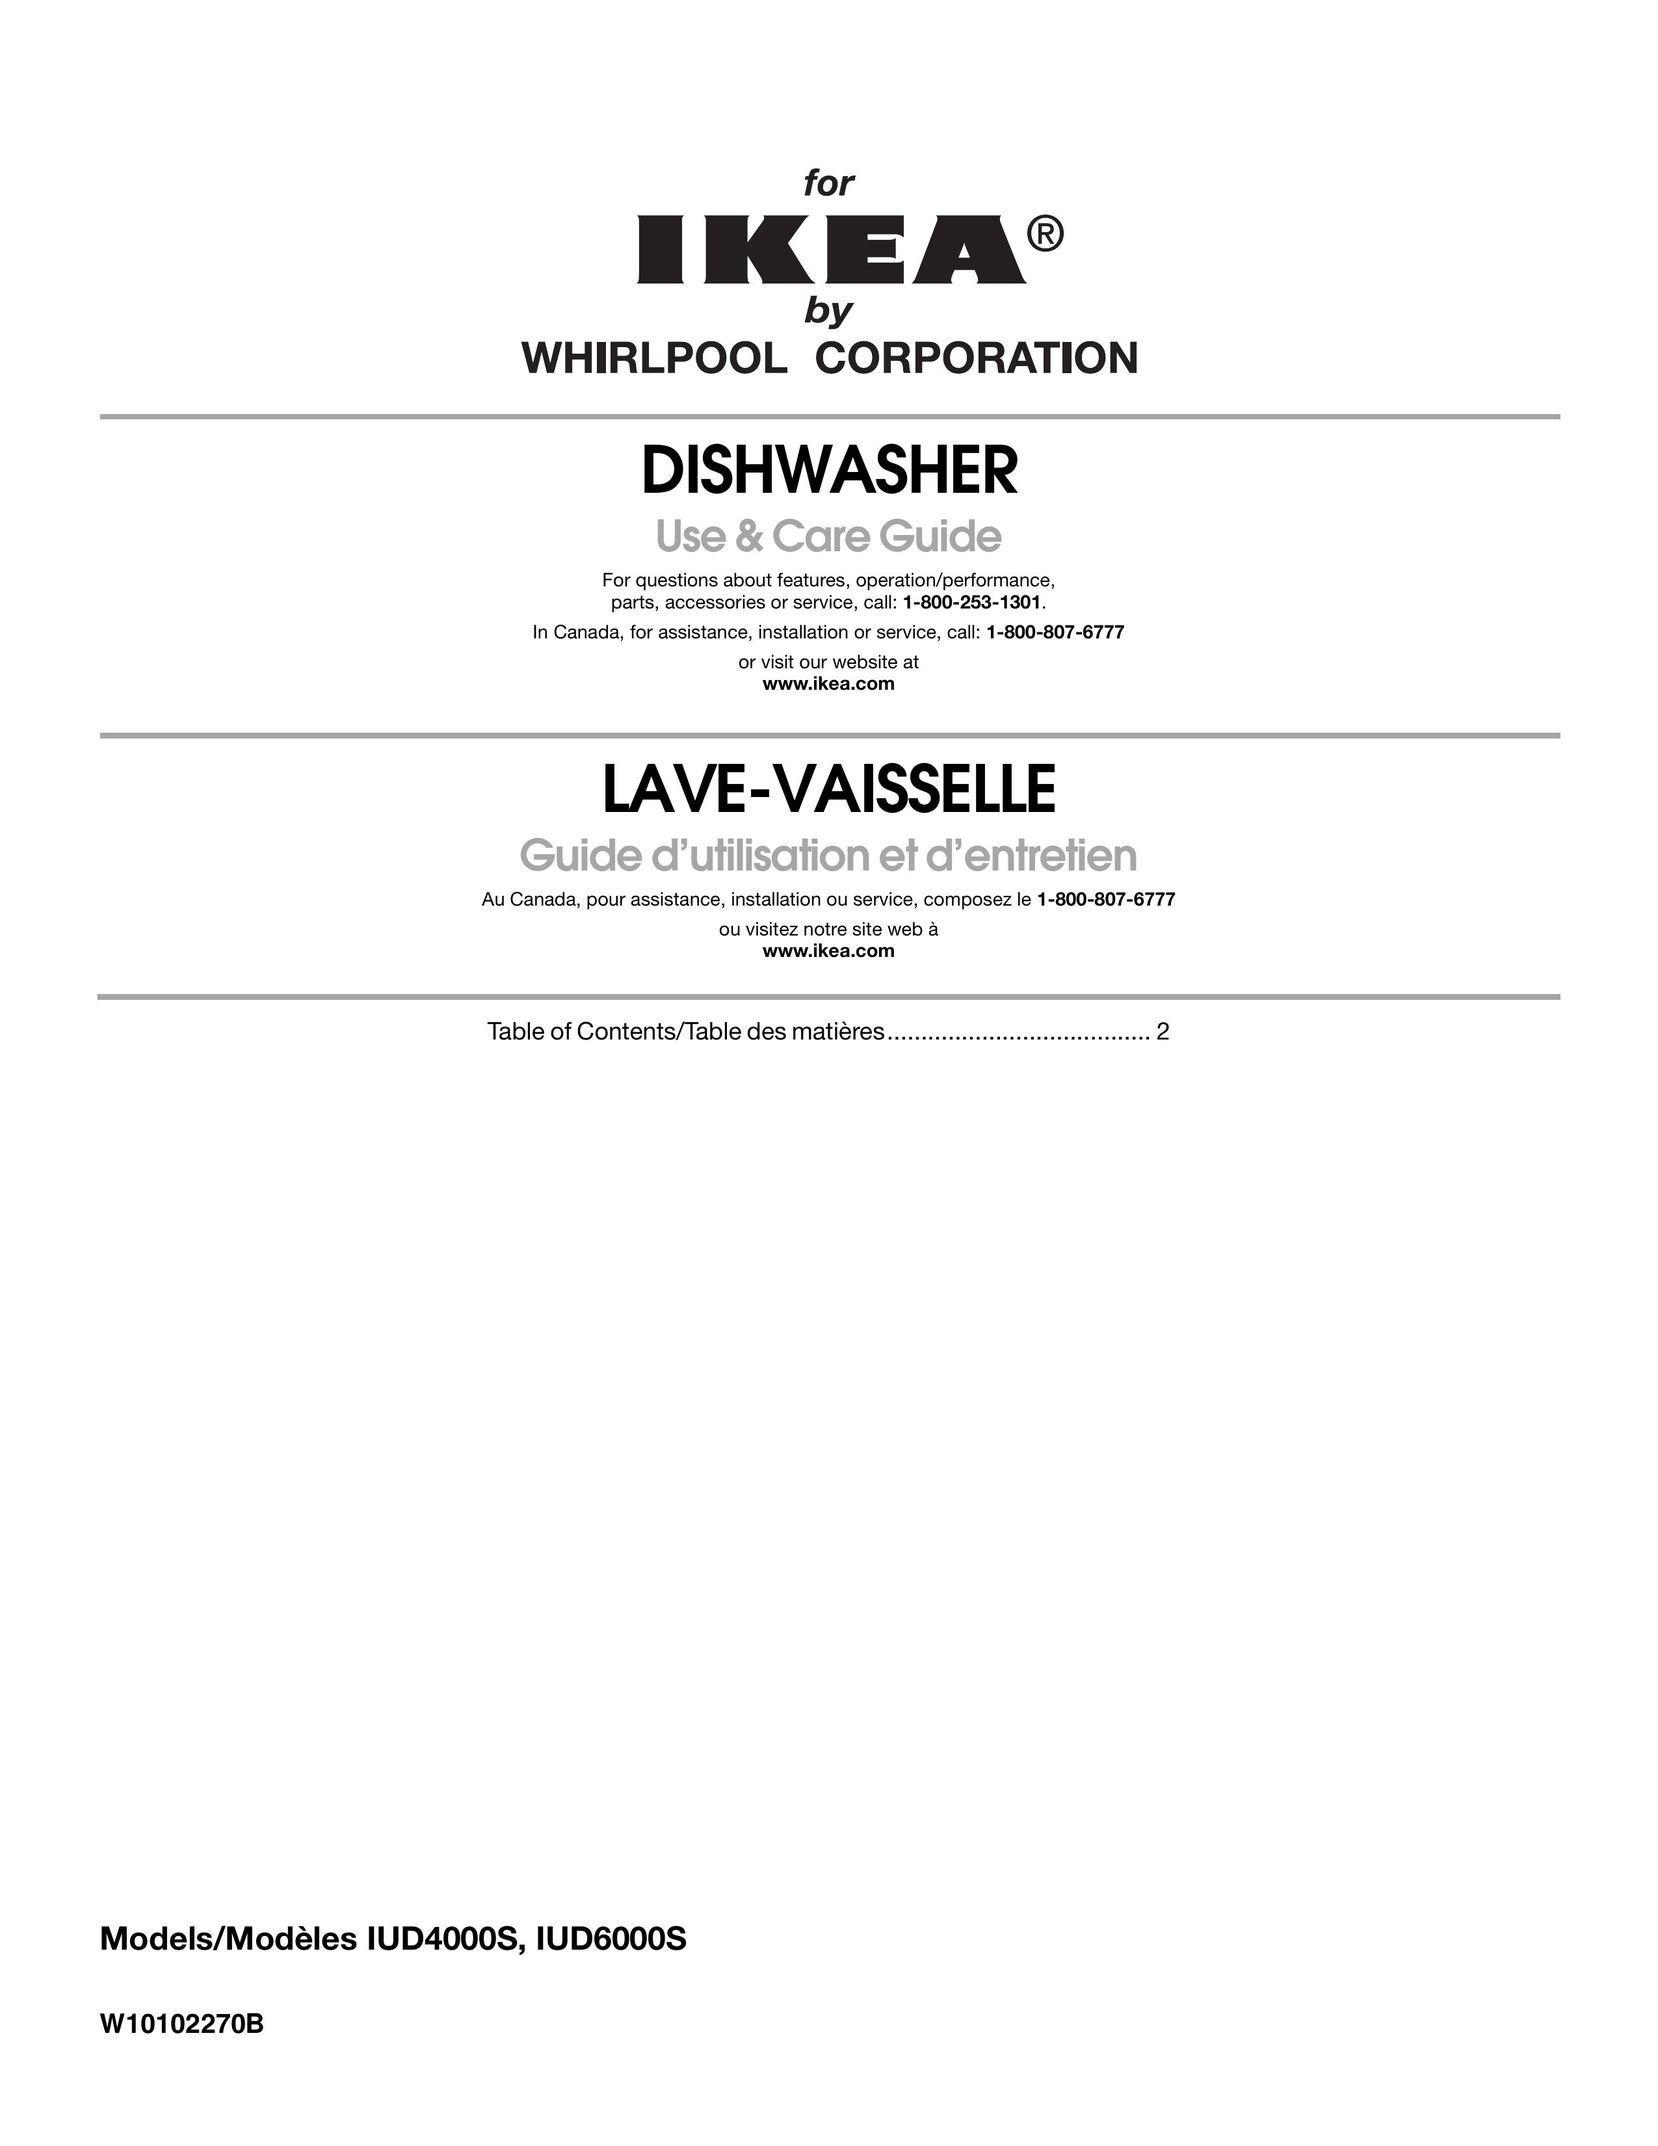 IKEA IUD6000S Dishwasher User Manual